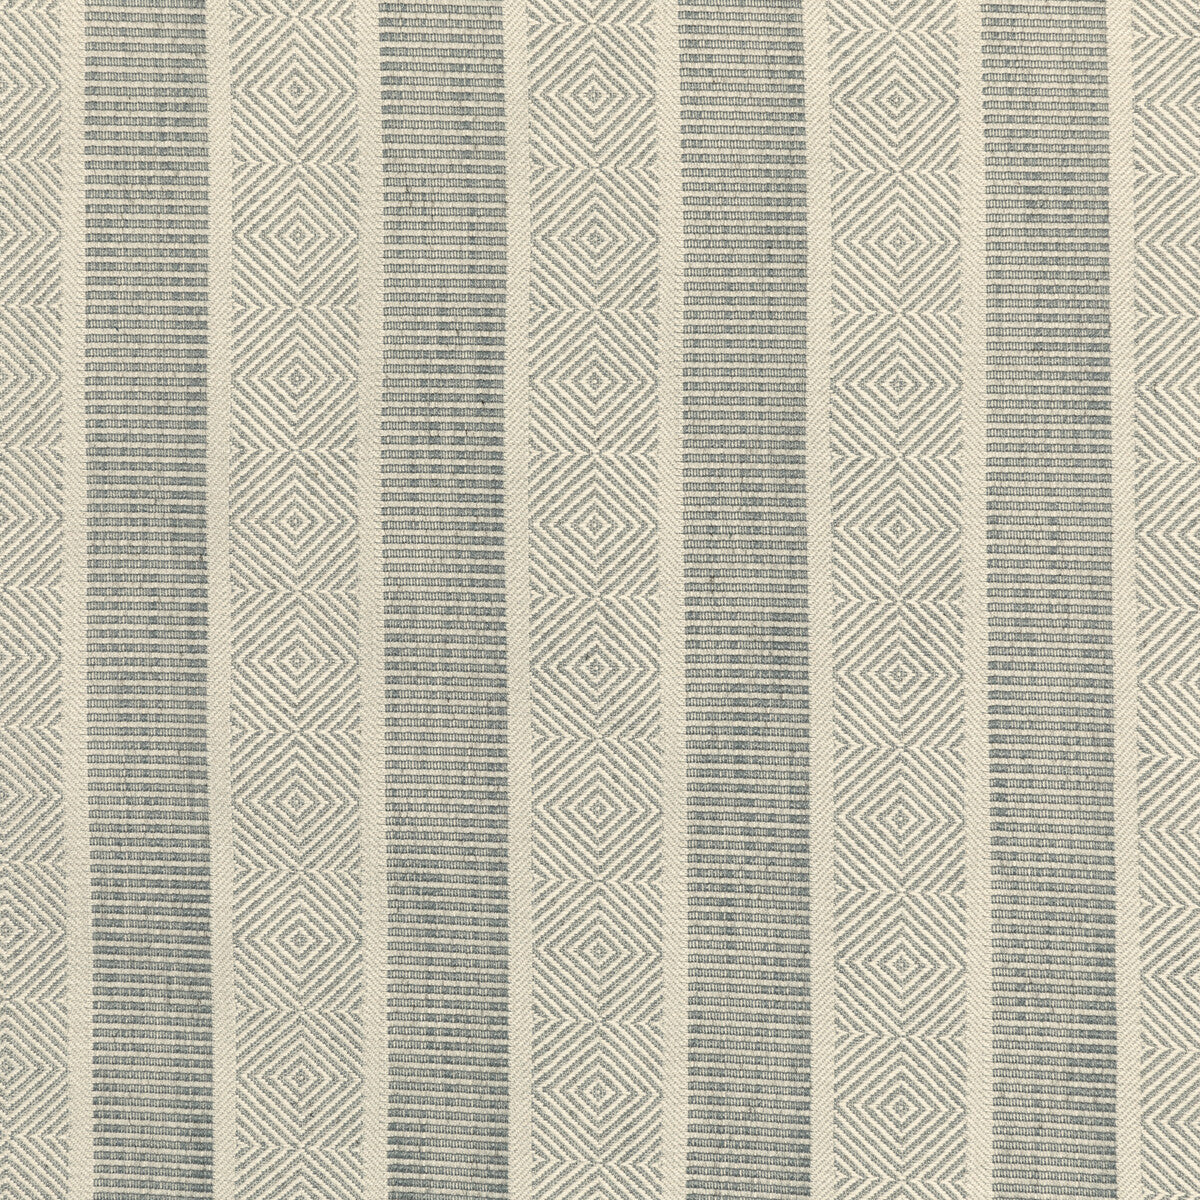 Kravet Design fabric in 36287-21 color - pattern 36287.21.0 - by Kravet Design